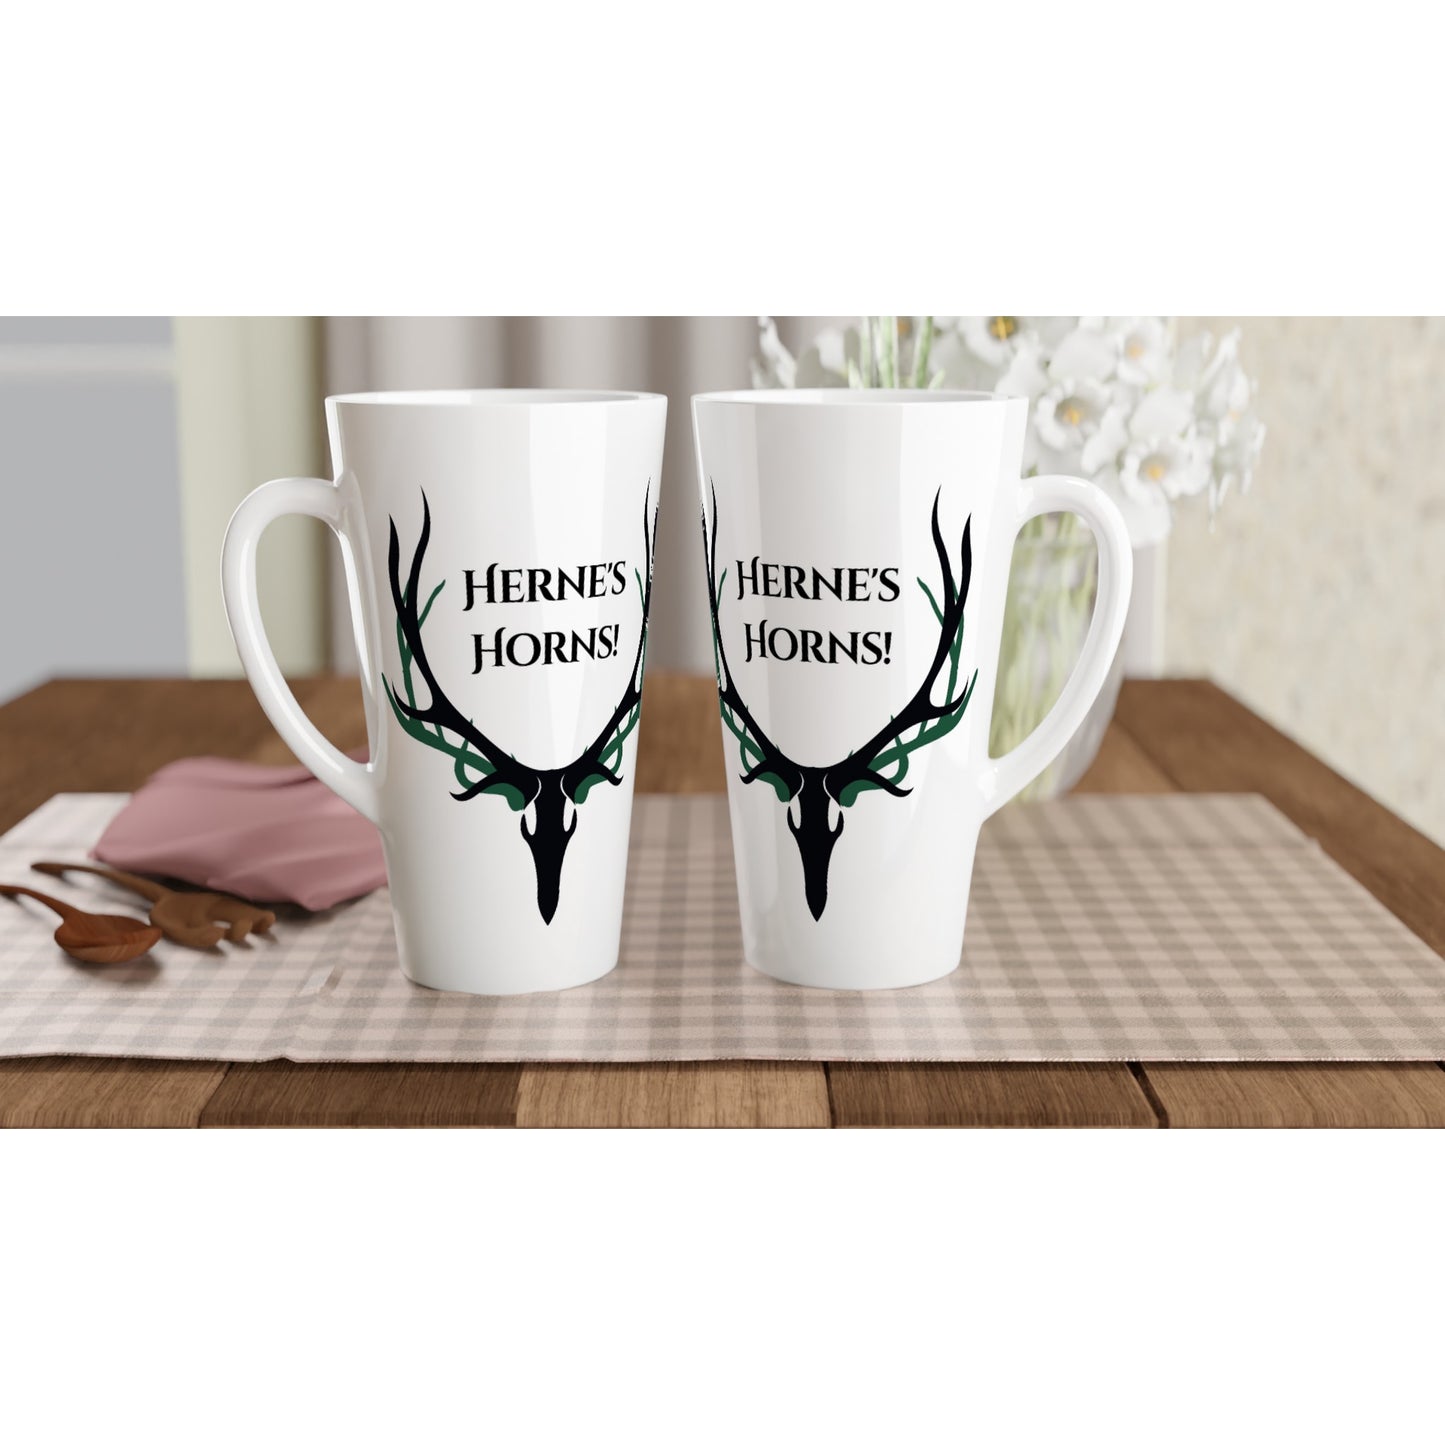 Herne's Hornes White Latte 17oz Ceramic Mug